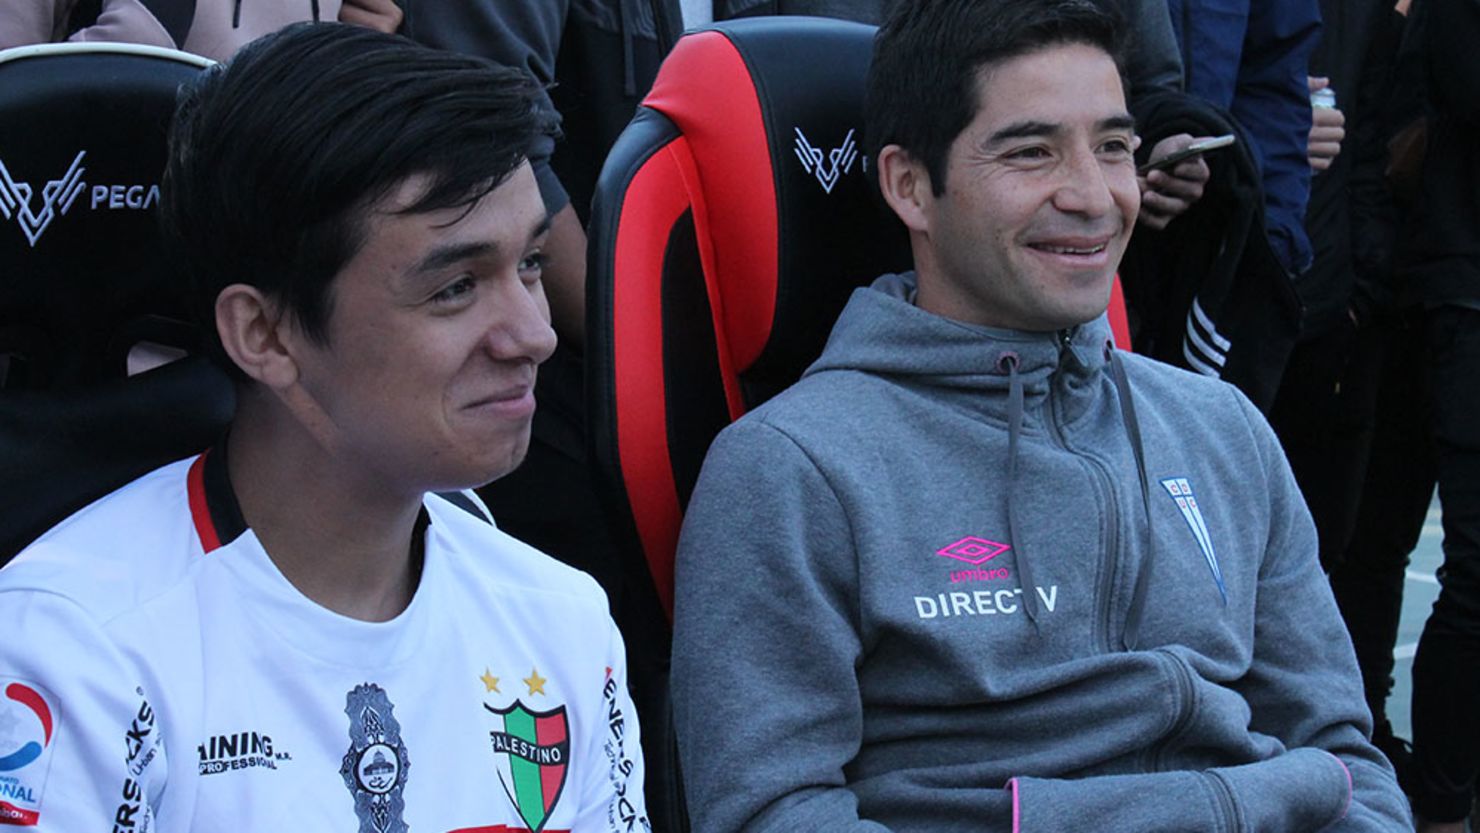 Foto del partido de exhibición de la LEF CHile. En la imagen, el gamer Matías Pino y el futbolista profesional Cristián Álvarez.